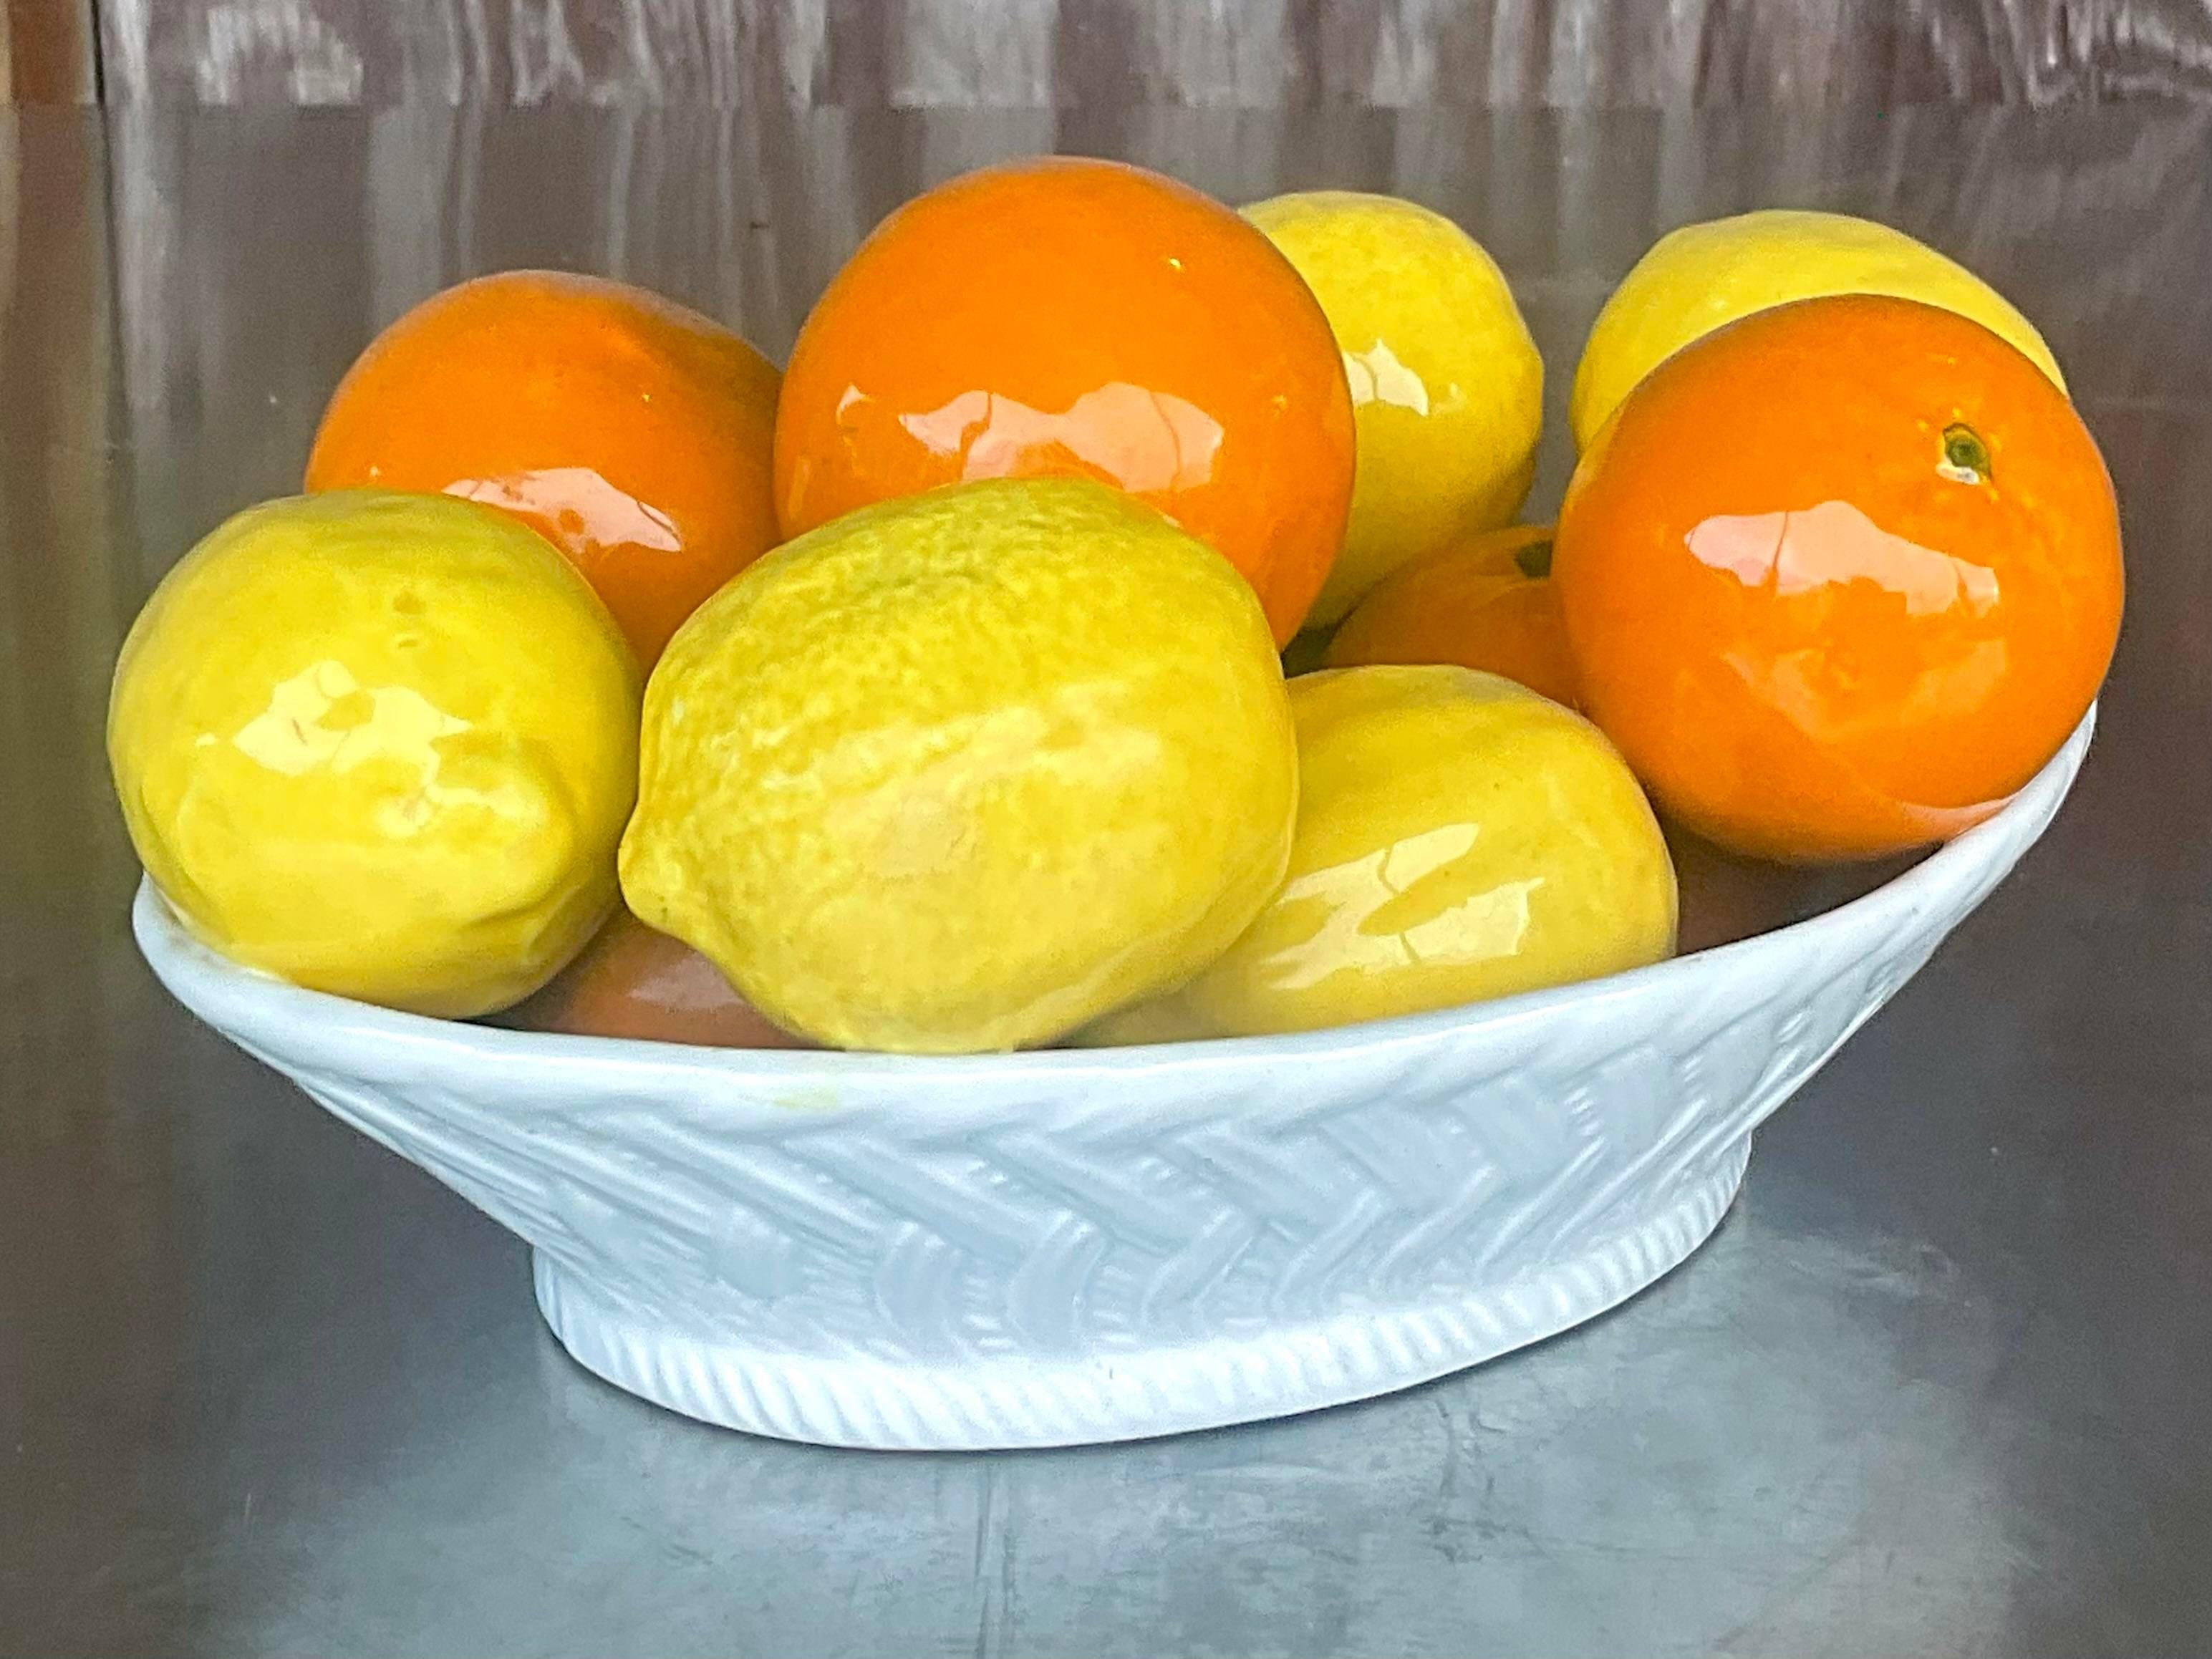 Bohemian Vintage Boho Italian Glazed Ceramic Oranges and Lemons